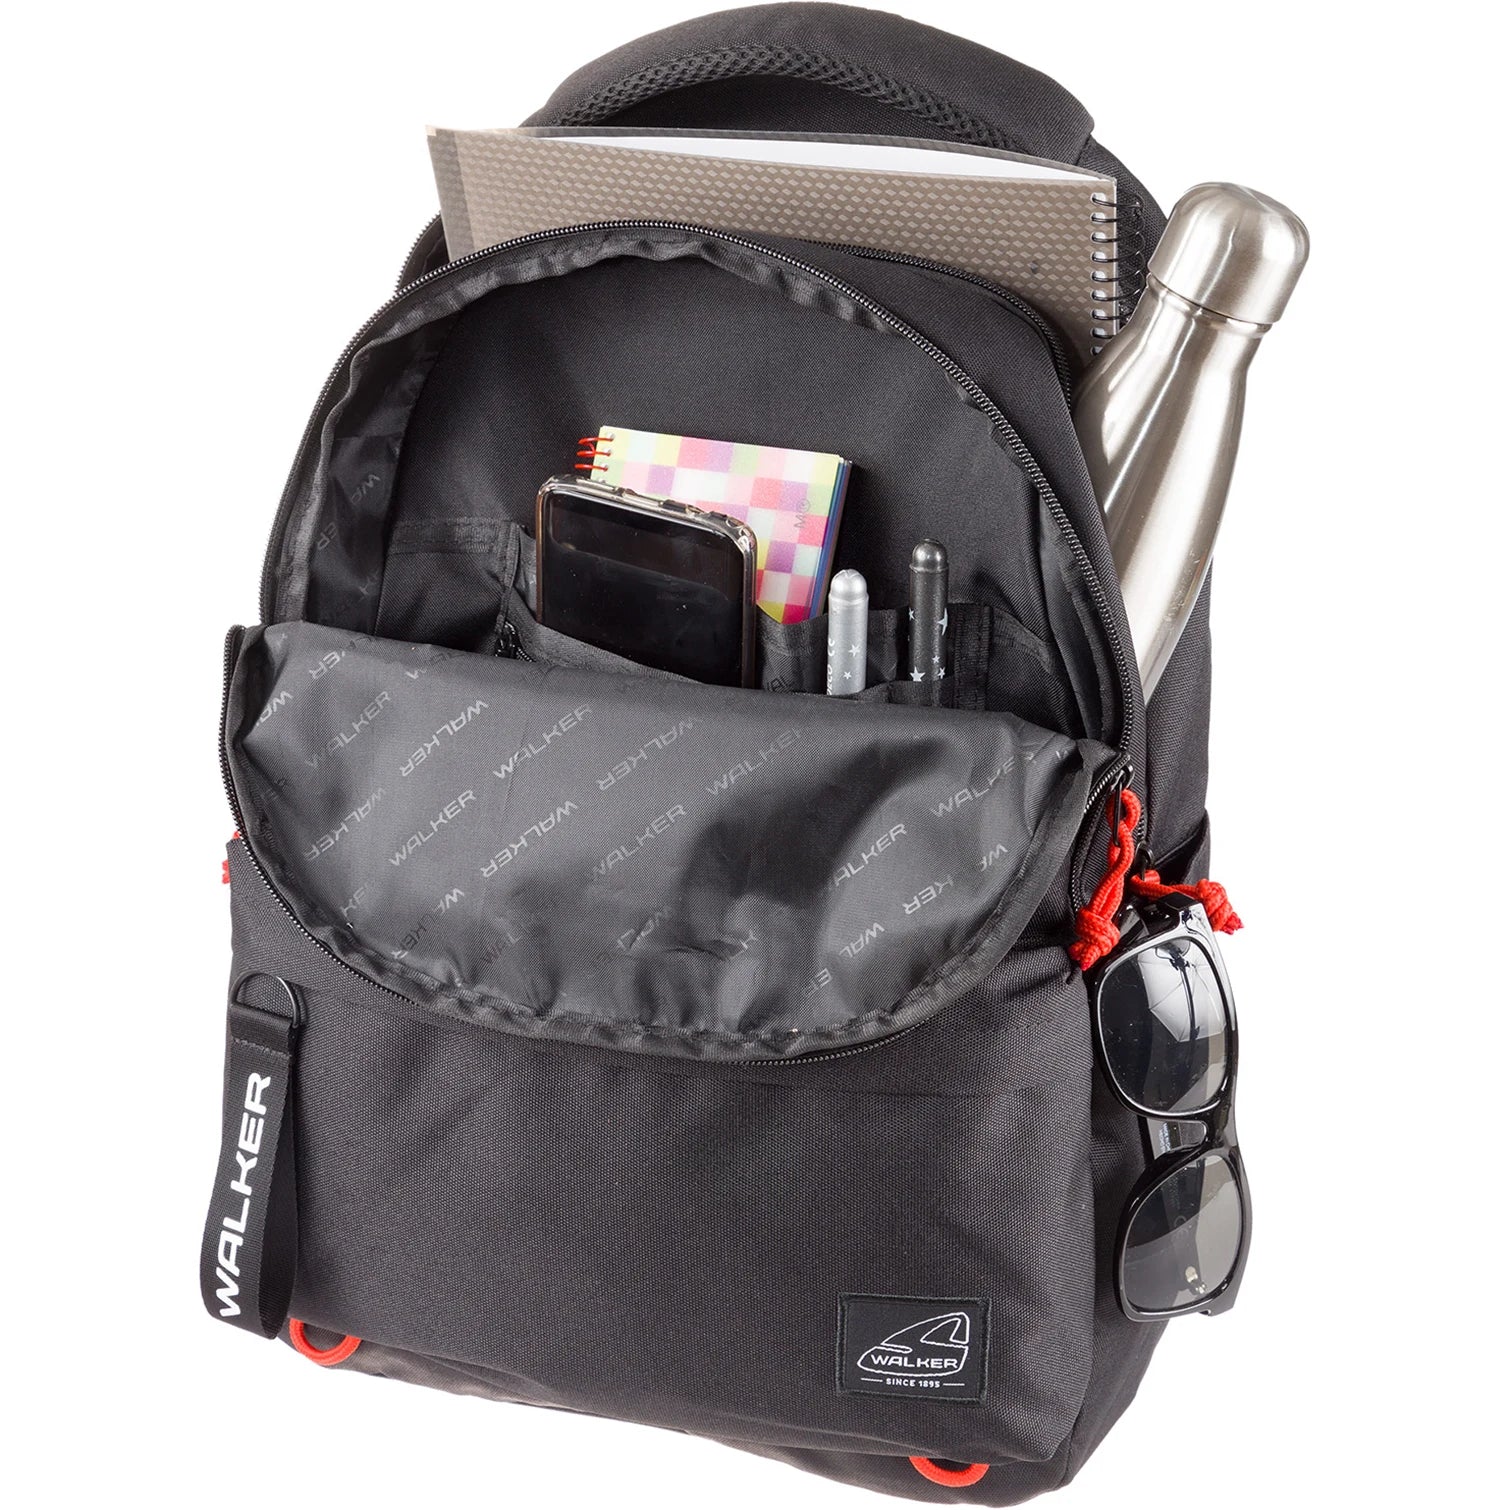 Walker Bags Alpha Sac à dos pour ordinateur portable 45 cm - Black Melange